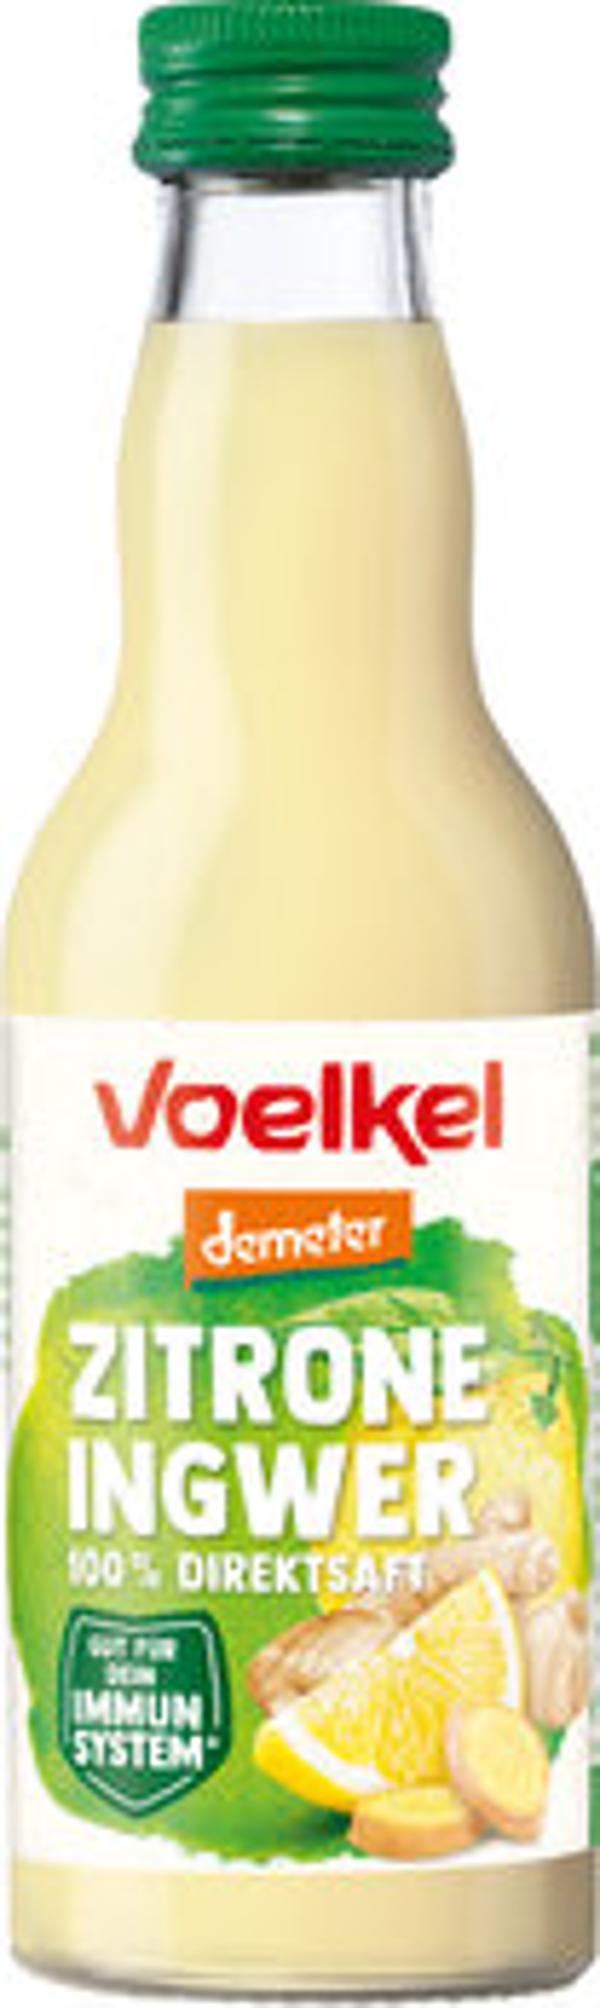 Produktfoto zu Voelkel Zitrone Ingwer Saft 0,2l